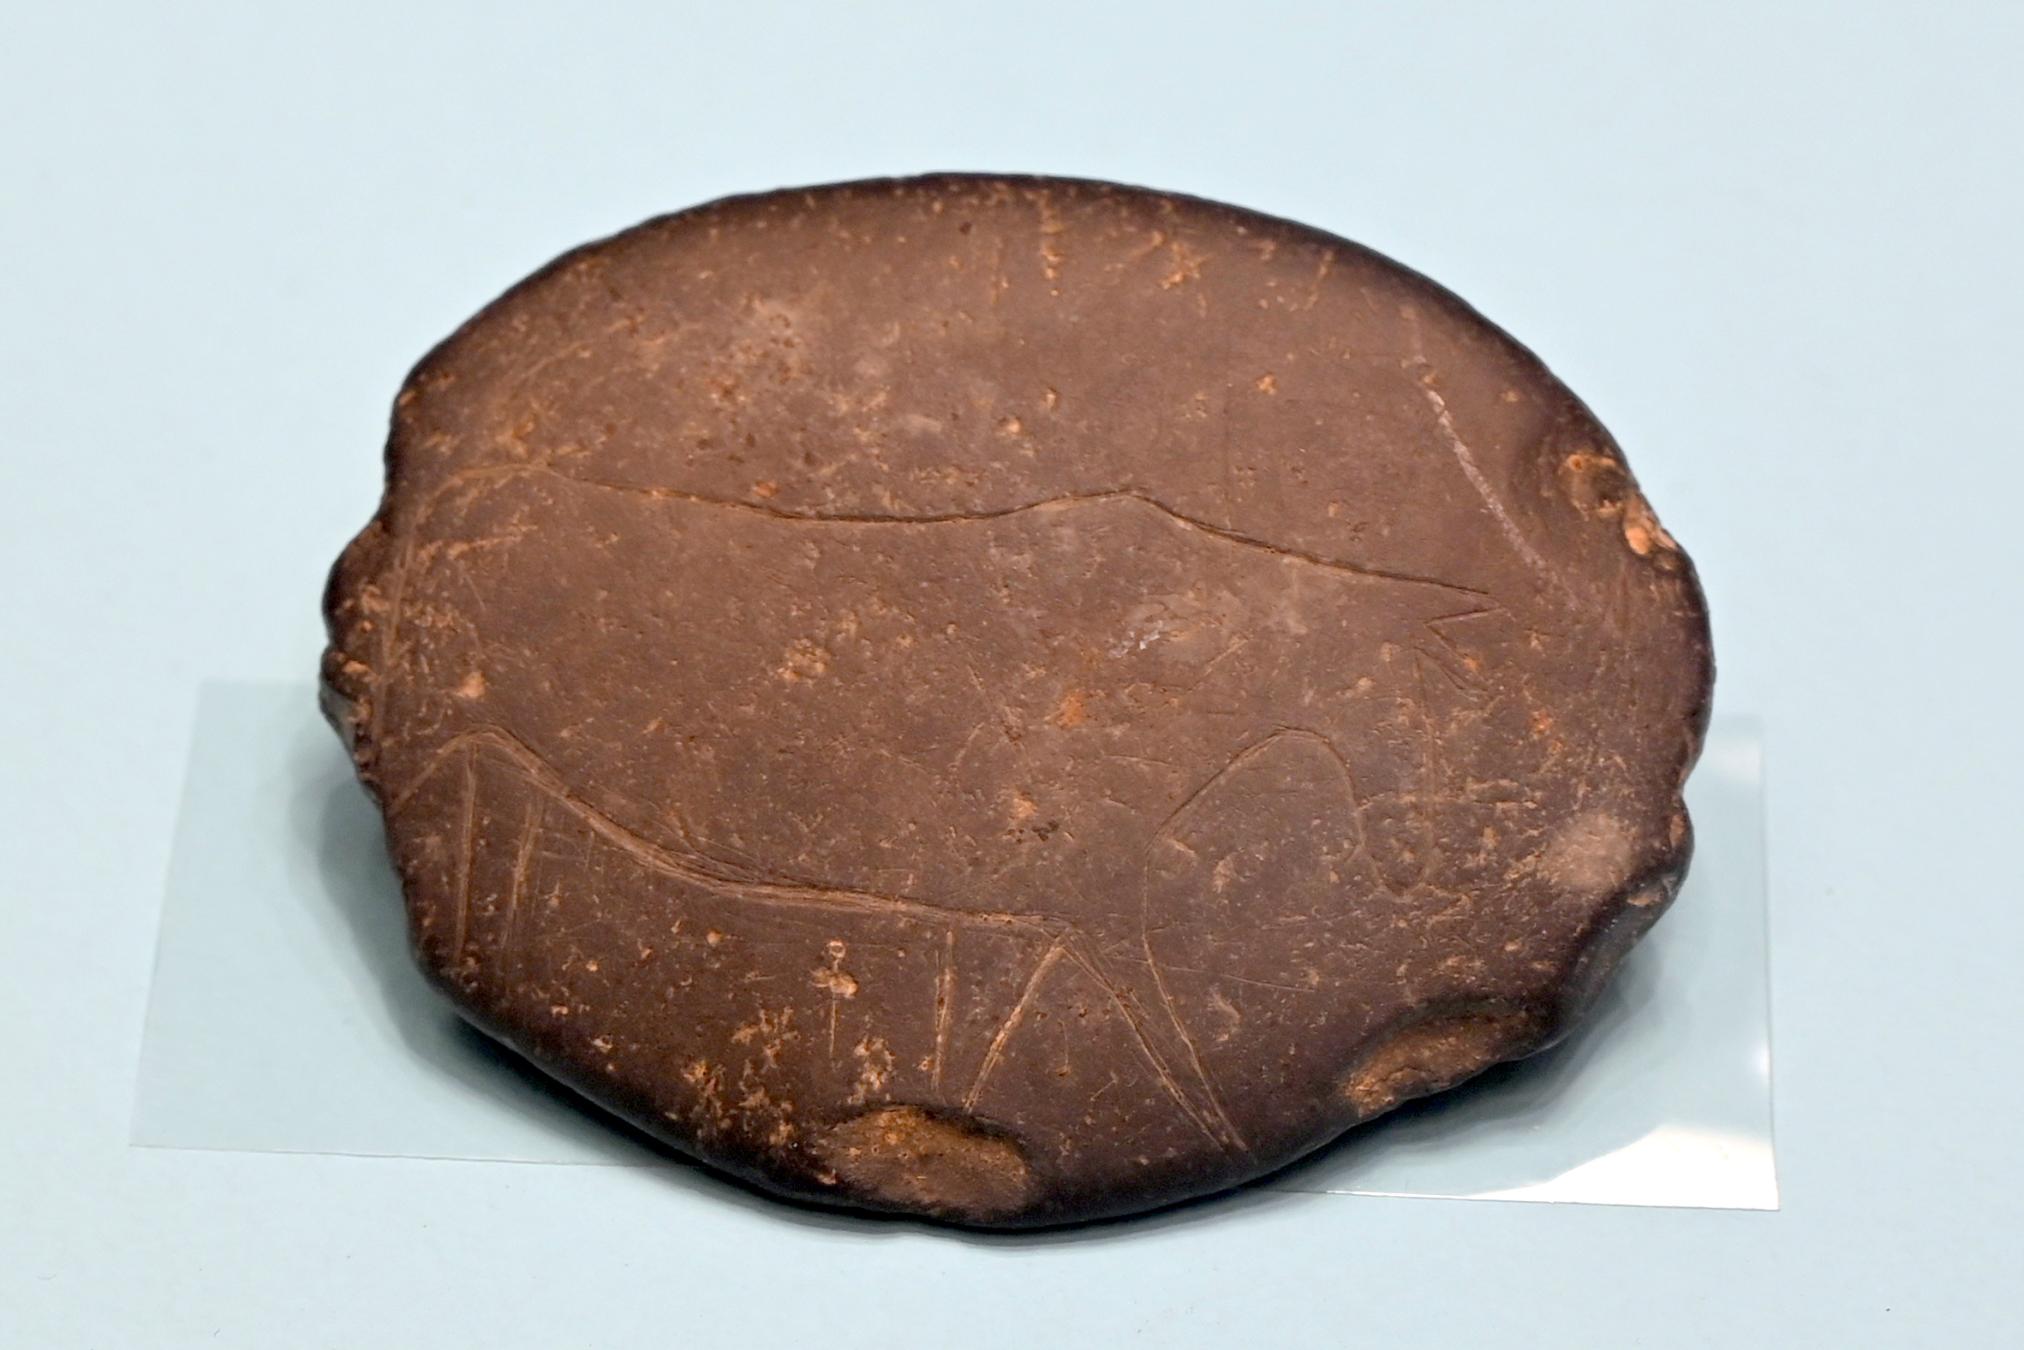 Retuscheur mit Elchgravierung, Spätpaläolithikum, 13000 - 10000 v. Chr., 11000 v. Chr., Bild 1/4